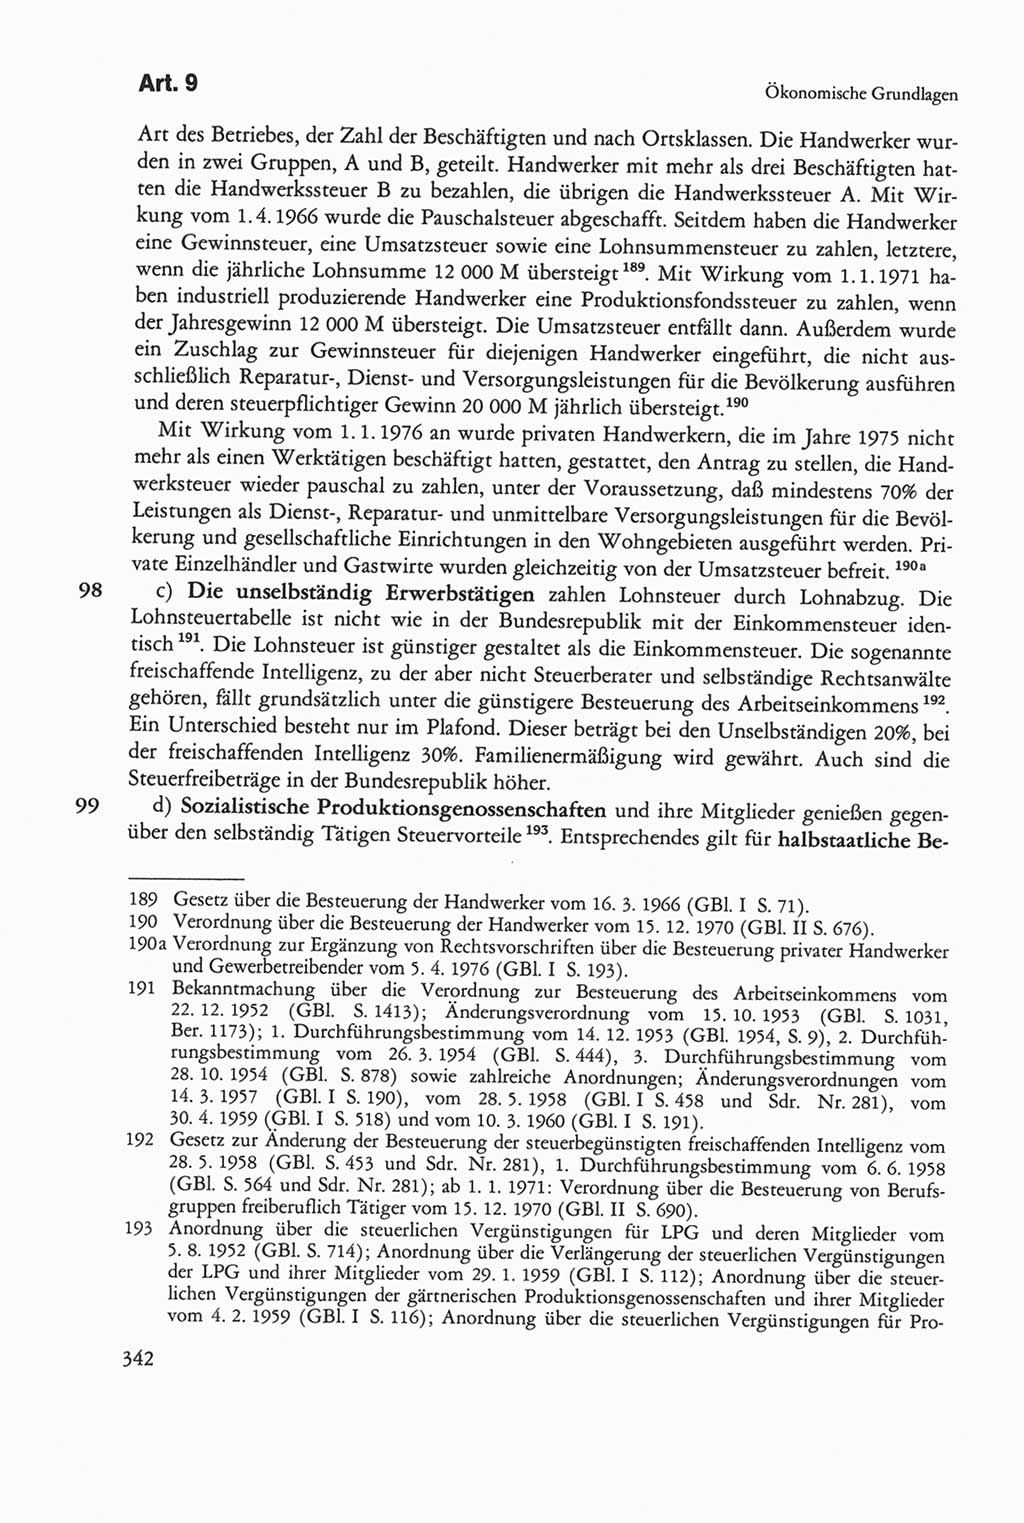 Die sozialistische Verfassung der Deutschen Demokratischen Republik (DDR), Kommentar 1982, Seite 342 (Soz. Verf. DDR Komm. 1982, S. 342)